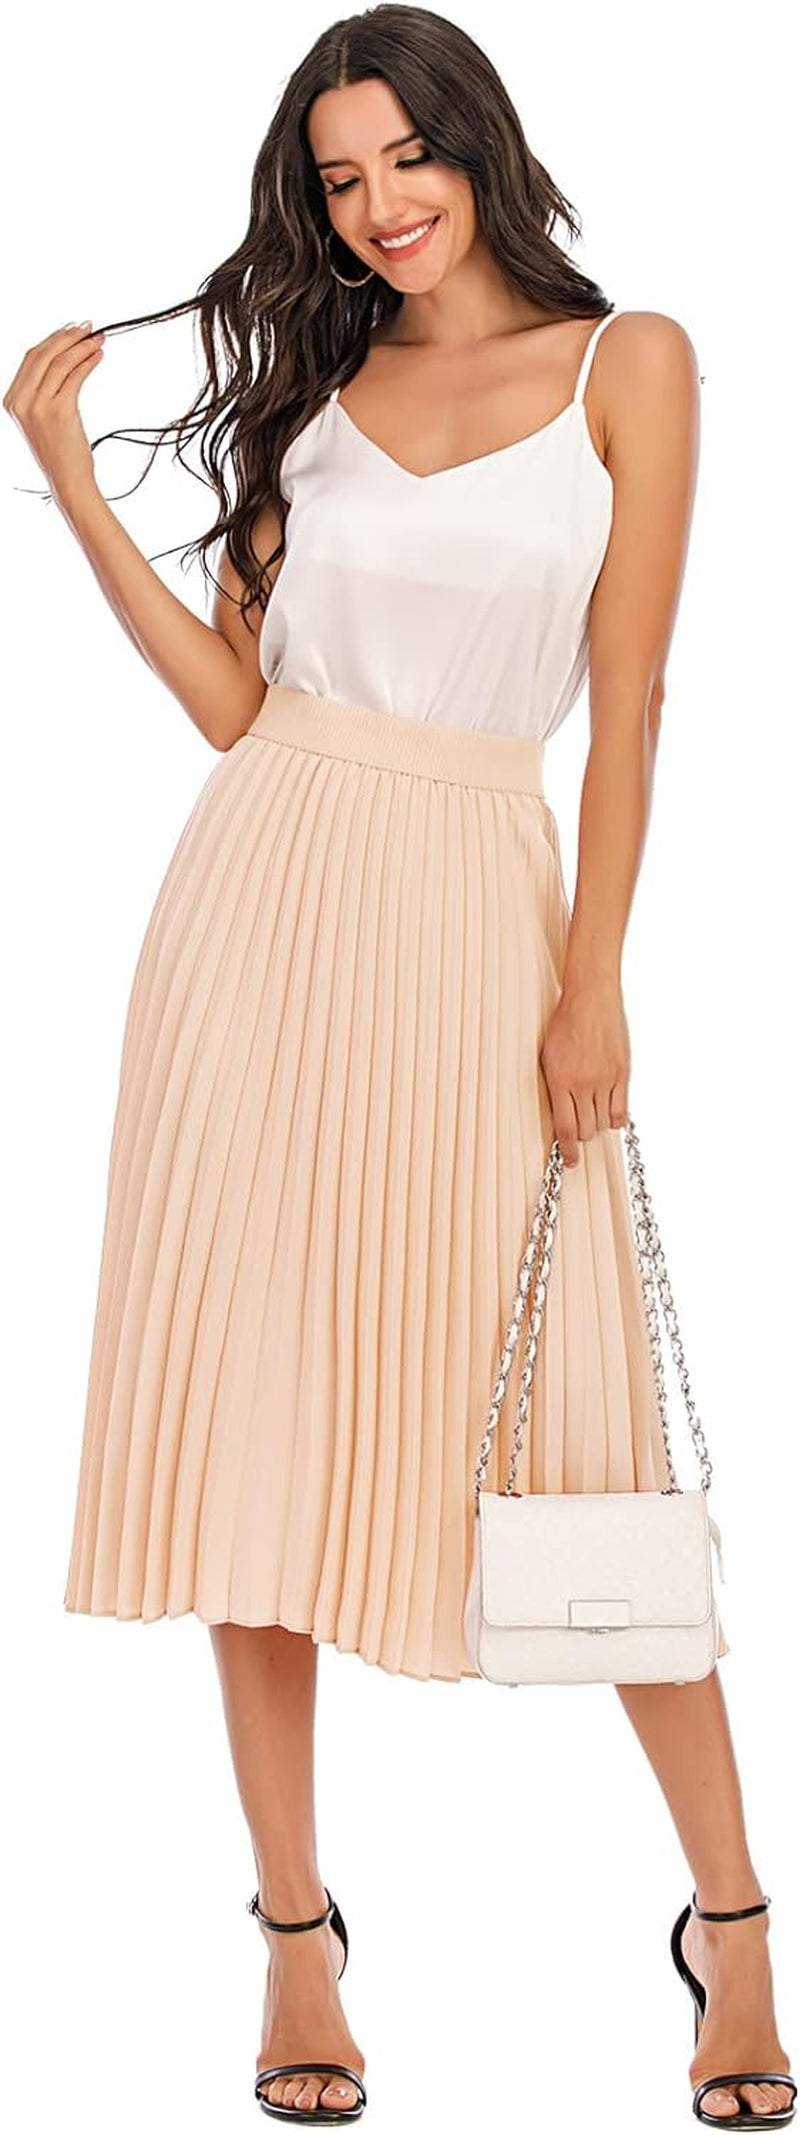 Pleated Midi Skirts for Women Midi Length High Waist A-Line Skirt